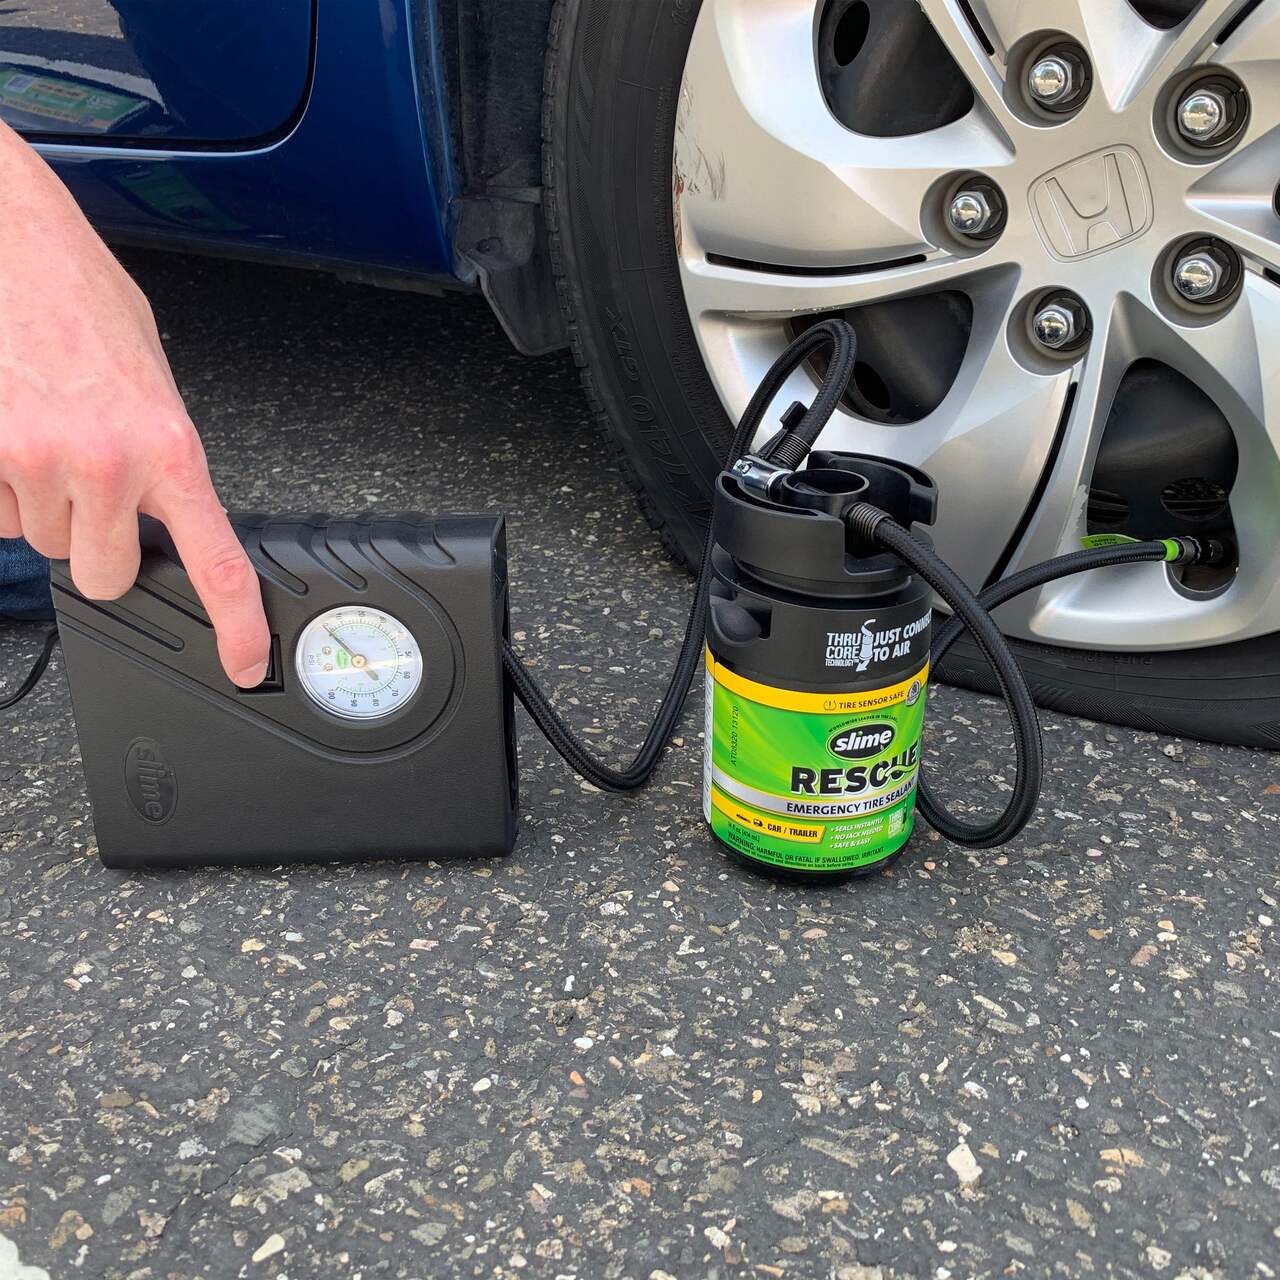 Smart Repair kit de réparation pneus de voiture